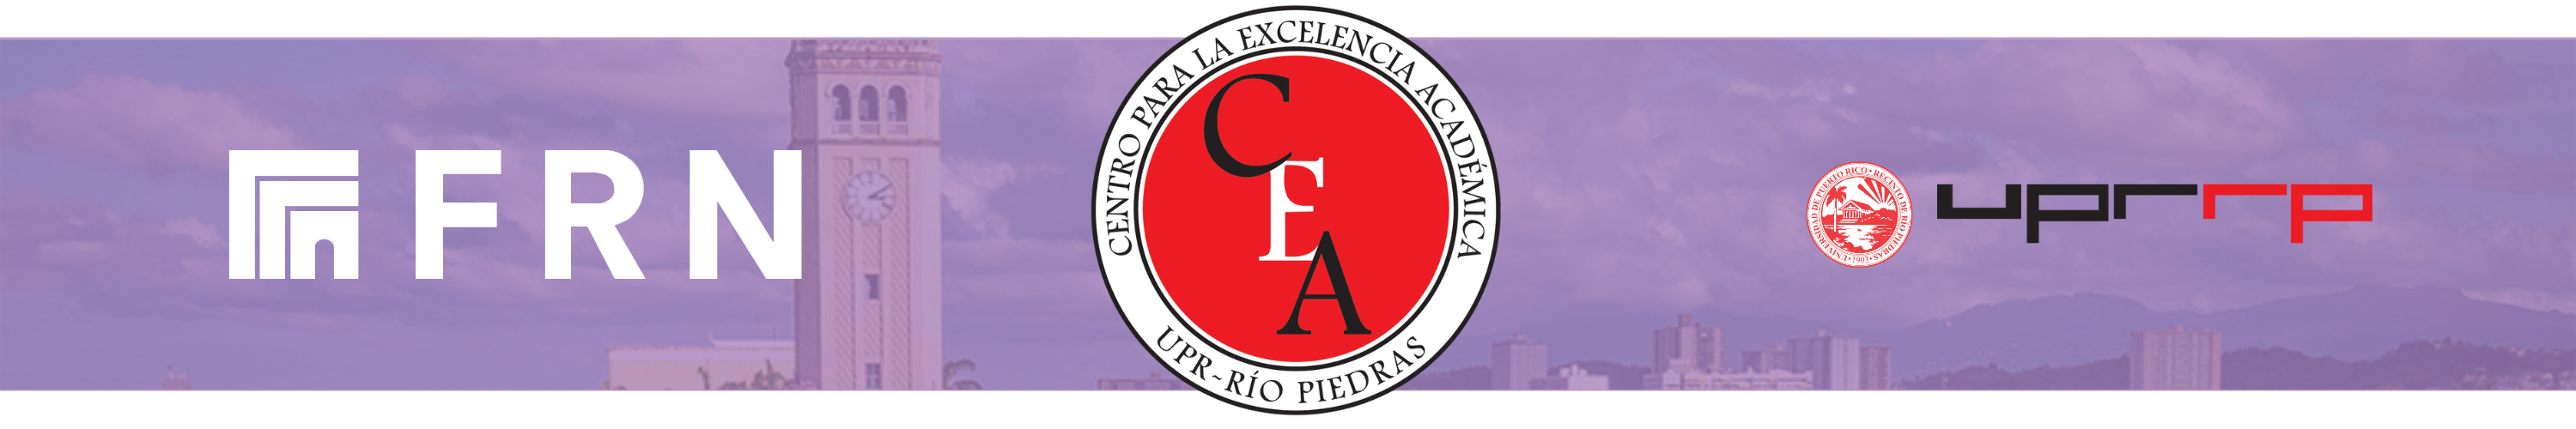 Banner de Faculty Resource Network con el logo del CEA y UPR-RP